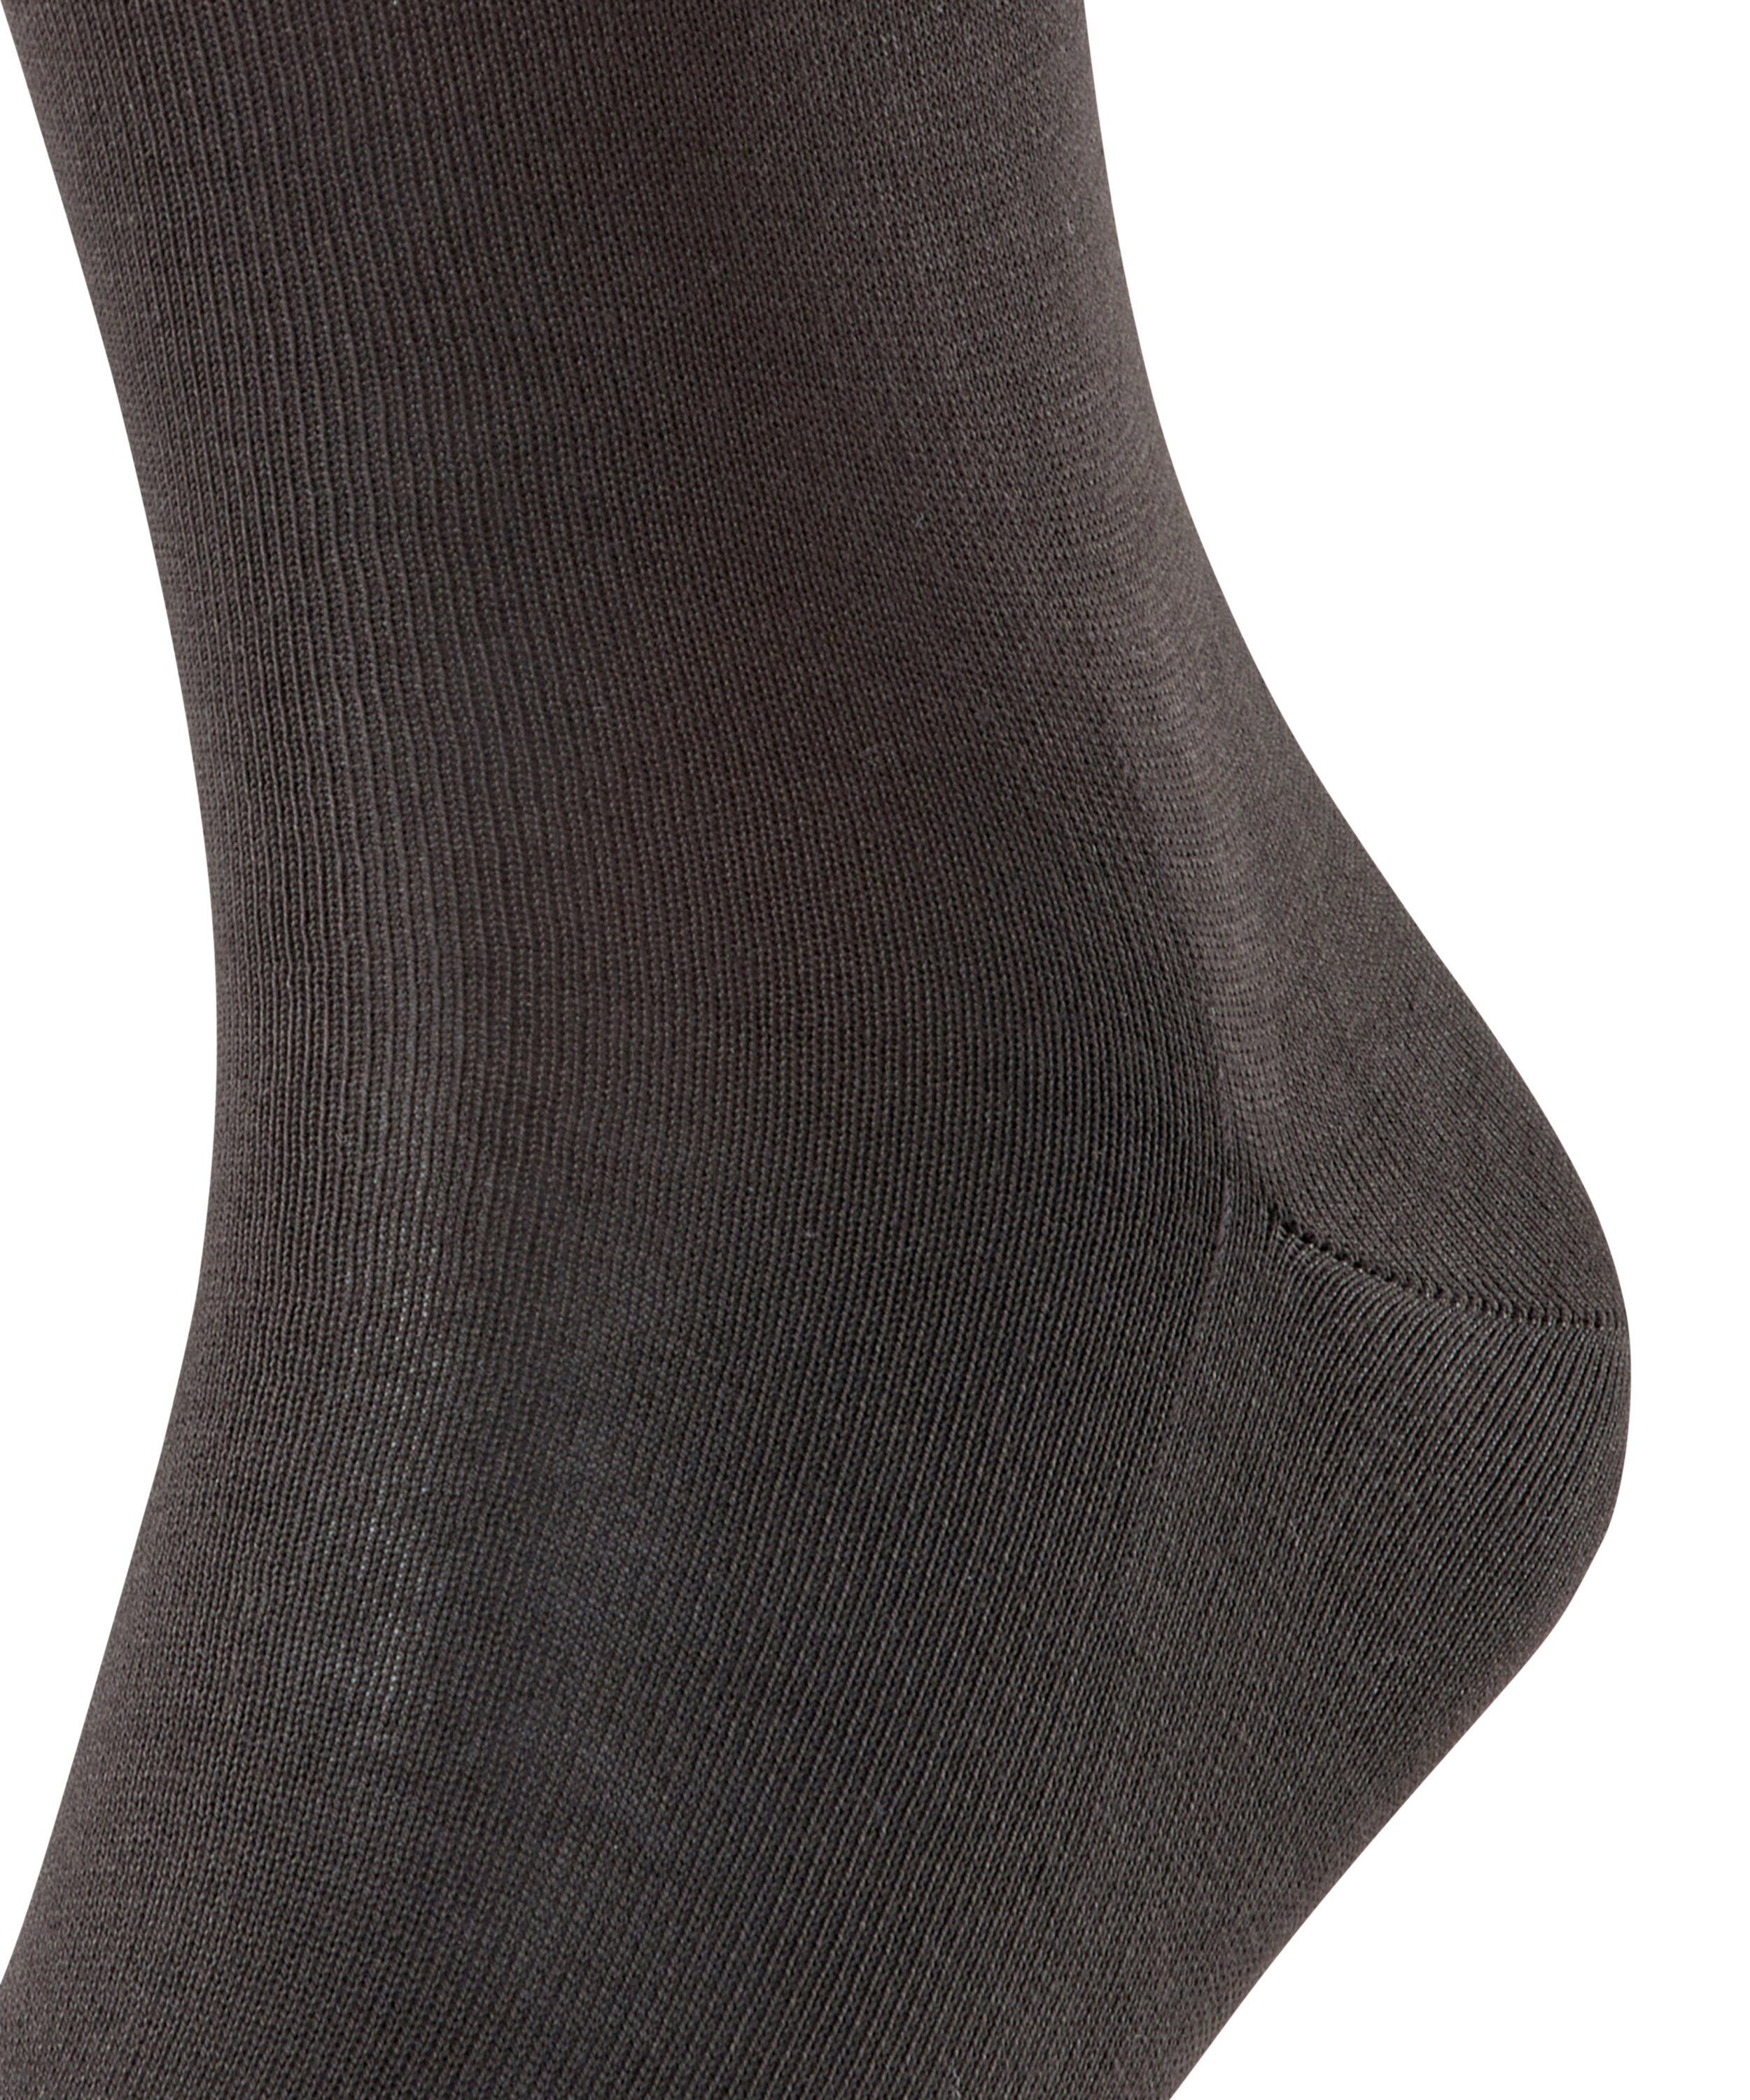 FALKE Socken (5930) (1-Paar) brown Firenze